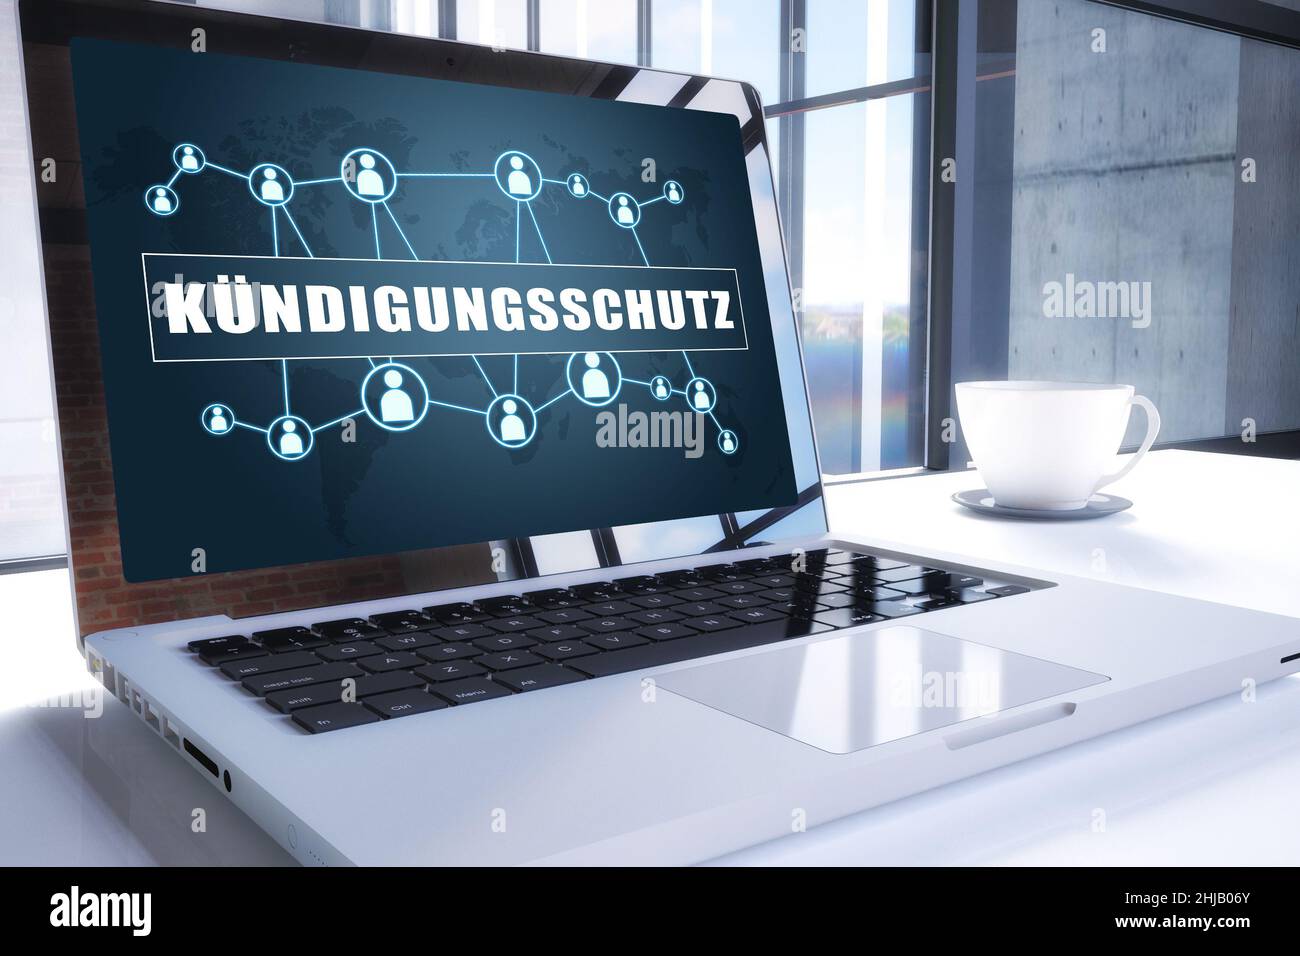 Kündigungsschutz - parola tedesca per la protezione contro il licenziamento. Testo sullo schermo moderno del notebook in ufficio. 3D rendering illustrazione business t Foto Stock